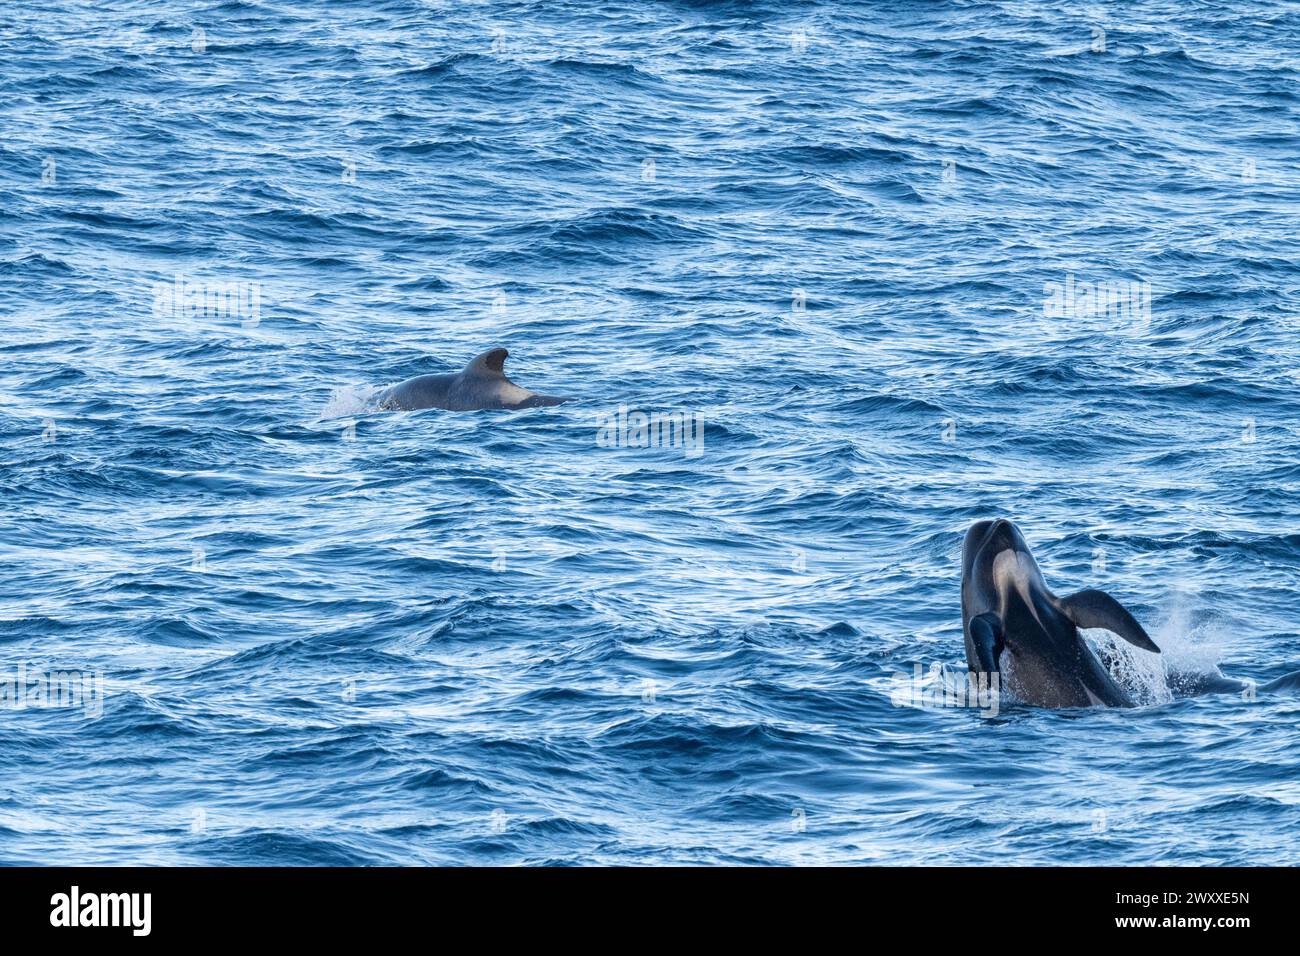 Australie, Tasmanie, près de Macquire Island. Nacelle de baleines pilotes à nageoires longues (Globicephala melas) 54° 34 16 S 158° 57 57 E Banque D'Images